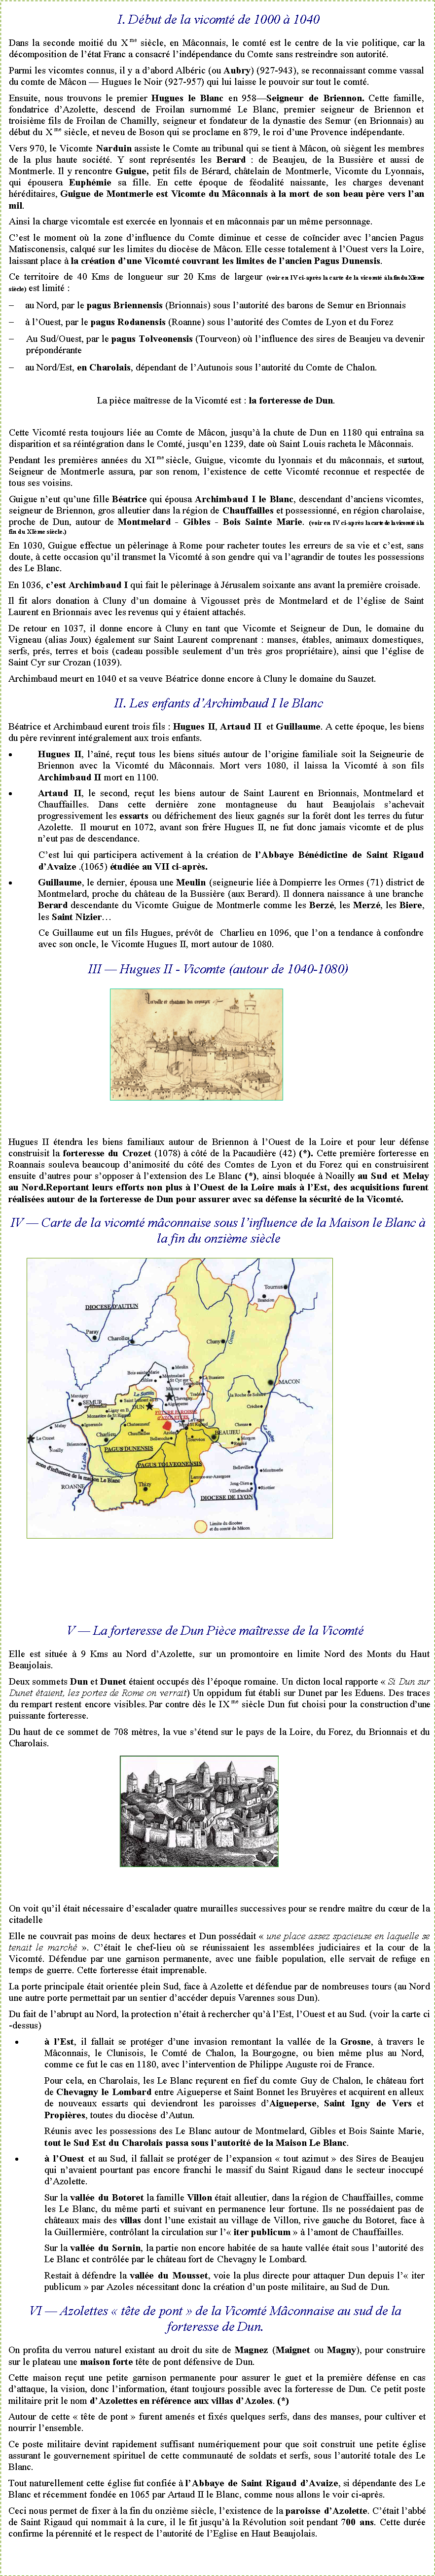 Zone de Texte: I. Début de la vicomté de 1000 à 1040Dans la seconde moitié du X me siècle, en Mâconnais, le comté est le centre de la vie politique, car la décomposition de l’état Franc a consacré l’indépendance du Comte sans restreindre son autorité.Parmi les vicomtes connus, il y a d’abord Albéric (ou Aubry) (927-943), se reconnaissant comme vassal du comte de Mâcon — Hugues le Noir (927-957) qui lui laisse le pouvoir sur tout le comté.Ensuite, nous trouvons le premier Hugues le Blanc en 958—Seigneur de Briennon. Cette famille, fondatrice d’Azolette, descend de Froilan surnommé Le Blanc, premier seigneur de Briennon et troisième fils de Froilan de Chamilly, seigneur et fondateur de la dynastie des Semur (en Brionnais) au début du X me siècle, et neveu de Boson qui se proclame en 879, le roi d’une Provence indépendante.Vers 970, le Vicomte Narduin assiste le Comte au tribunal qui se tient à Mâcon, où siègent les membres de la plus haute société. Y sont représentés les Berard : de Beaujeu, de la Bussière et aussi de Montmerle. Il y rencontre Guigue, petit fils de Bérard, châtelain de Montmerle, Vicomte du Lyonnais, qui épousera Euphémie sa fille. En cette époque de féodalité naissante, les charges devenant héréditaires, Guigue de Montmerle est Vicomte du Mâconnais à la mort de son beau père vers l’an mil.Ainsi la charge vicomtale est exercée en lyonnais et en mâconnais par un même personnage.C’est le moment où la zone d’influence du Comte diminue et cesse de coïncider avec l’ancien Pagus Matisconensis, calqué sur les limites du diocèse de Mâcon. Elle cesse totalement à l’Ouest vers la Loire, laissant place à la création d’une Vicomté couvrant les limites de l’ancien Pagus Dunensis.Ce territoire de 40 Kms de longueur sur 20 Kms de largeur (voir en IV ci-après la carte de la vicomté à la fin du XIème siècle) est limité :	au Nord, par le pagus Briennensis (Brionnais) sous l’autorité des barons de Semur en Brionnais	à l’Ouest, par le pagus Rodanensis (Roanne) sous l’autorité des Comtes de Lyon et du ForezAu Sud/Ouest, par le pagus Tolveonensis (Tourveon) où l’influence des sires de Beaujeu va devenir prépondérante	au Nord/Est, en Charolais, dépendant de l’Autunois sous l’autorité du Comte de Chalon. La pièce maîtresse de la Vicomté est : la forteresse de Dun.Cette Vicomté resta toujours liée au Comte de Mâcon, jusqu’à la chute de Dun en 1180 qui entraîna sa disparition et sa réintégration dans le Comté, jusqu’en 1239, date où Saint Louis racheta le Mâconnais.Pendant les premières années du XI me siècle, Guigue, vicomte du lyonnais et du mâconnais, et surtout, Seigneur de Montmerle assura, par son renom, l’existence de cette Vicomté reconnue et respectée de tous ses voisins.Guigue n’eut qu’une fille Béatrice qui épousa Archimbaud I le Blanc, descendant d’anciens vicomtes, seigneur de Briennon, gros alleutier dans la région de Chauffailles et possessionné, en région charolaise, proche de Dun, autour de Montmelard - Gibles - Bois Sainte Marie. (voir en IV ci-après la carte de la vicomté à la fin du XIème siècle.) En 1030, Guigue effectue un pèlerinage à Rome pour racheter toutes les erreurs de sa vie et c’est, sans doute, à cette occasion qu’il transmet la Vicomté à son gendre qui va l’agrandir de toutes les possessions des Le Blanc.En 1036, c’est Archimbaud I qui fait le pèlerinage à Jérusalem soixante ans avant la première croisade.Il fit alors donation à Cluny d’un domaine à Vigousset près de Montmelard et de l’église de Saint Laurent en Brionnais avec les revenus qui y étaient attachés.De retour en 1037, il donne encore à Cluny en tant que Vicomte et Seigneur de Dun, le domaine du Vigneau (alias Joux) également sur Saint Laurent comprenant : manses, étables, animaux domestiques, serfs, prés, terres et bois (cadeau possible seulement d’un très gros propriétaire), ainsi que l’église de Saint Cyr sur Crozan (1039).Archimbaud meurt en 1040 et sa veuve Béatrice donne encore à Cluny le domaine du Sauzet.II. Les enfants d’Archimbaud I le BlancBéatrice et Archimbaud eurent trois fils : Hugues II, Artaud II  et Guillaume. A cette époque, les biens du père revinrent intégralement aux trois enfants.Hugues II, l’aîné, reçut tous les biens situés autour de l’origine familiale soit la Seigneurie de Briennon avec la Vicomté du Mâconnais. Mort vers 1080, il laissa la Vicomté à son fils Archimbaud II mort en 1100.Artaud II, le second, reçut les biens autour de Saint Laurent en Brionnais, Montmelard et Chauffailles. Dans cette dernière zone montagneuse du haut Beaujolais s’achevait progressivement les essarts ou défrichement des lieux gagnés sur la forêt dont les terres du futur Azolette.  Il mourut en 1072, avant son frère Hugues II, ne fut donc jamais vicomte et de plus n’eut pas de descendance.C’est lui qui participera activement à la création de l’Abbaye Bénédictine de Saint Rigaud d’Avaize .(1065) étudiée au VII ci-après.Guillaume, le dernier, épousa une Meulin (seigneurie liée à Dompierre les Ormes (71) district de Montmelard, proche du château de la Bussière (aux Berard). Il donnera naissance à une branche Berard descendante du Vicomte Guigue de Montmerle comme les Berzé, les Merzé, les Biere, les Saint Nizier…Ce Guillaume eut un fils Hugues, prévôt de  Charlieu en 1096, que l’on a tendance à confondre avec son oncle, le Vicomte Hugues II, mort autour de 1080.III — Hugues II - Vicomte (autour de 1040-1080)￼Hugues II étendra les biens familiaux autour de Briennon à l’Ouest de la Loire et pour leur défense construisit la forteresse du Crozet (1078) à côté de la Pacaudière (42) (*). Cette première forteresse en Roannais souleva beaucoup d’animosité du côté des Comtes de Lyon et du Forez qui en construisirent ensuite d’autres pour s’opposer à l’extension des Le Blanc (*), ainsi bloquée à Noailly au Sud et Melay au Nord.Reportant leurs efforts non plus à l’Ouest de la Loire mais à l’Est, des acquisitions furent réalisées autour de la forteresse de Dun pour assurer avec sa défense la sécurité de la Vicomté.IV — Carte de la vicomté mâconnaise sous l’influence de la Maison le Blanc à la fin du onzième siècle￼V — La forteresse de Dun Pièce maîtresse de la VicomtéElle est située à 9 Kms au Nord d’Azolette, sur un promontoire en limite Nord des Monts du Haut Beaujolais.Deux sommets Dun et Dunet étaient occupés dès l’époque romaine. Un dicton local rapporte « Si Dun sur Dunet étaient, les portes de Rome on verrait) Un oppidum fut établi sur Dunet par les Eduens. Des traces du rempart restent encore visibles. Par contre dès le IX me siècle Dun fut choisi pour la construction d’une puissante forteresse.Du haut de ce sommet de 708 mètres, la vue s’étend sur le pays de la Loire, du Forez, du Brionnais et du Charolais.￼On voit qu’il était nécessaire d’escalader quatre murailles successives pour se rendre maître du cœur de la citadelleElle ne couvrait pas moins de deux hectares et Dun possédait « une place assez spacieuse en laquelle se tenait le marché ». C’était le chef-lieu où se réunissaient les assemblées judiciaires et la cour de la Vicomté. Défendue par une garnison permanente, avec une faible population, elle servait de refuge en temps de guerre. Cette forteresse était imprenable.La porte principale était orientée plein Sud, face à Azolette et défendue par de nombreuses tours (au Nord une autre porte permettait par un sentier d’accéder depuis Varennes sous Dun).Du fait de l’abrupt au Nord, la protection n’était à rechercher qu’à l’Est, l’Ouest et au Sud. (voir la carte ci-dessus)à l’Est, il fallait se protéger d’une invasion remontant la vallée de la Grosne, à travers le Mâconnais, le Clunisois, le Comté de Chalon, la Bourgogne, ou bien même plus au Nord, comme ce fut le cas en 1180, avec l’intervention de Philippe Auguste roi de France.Pour cela, en Charolais, les Le Blanc reçurent en fief du comte Guy de Chalon, le château fort de Chevagny le Lombard entre Aigueperse et Saint Bonnet les Bruyères et acquirent en alleux de nouveaux essarts qui deviendront les paroisses d’Aigueperse, Saint Igny de Vers et Propières, toutes du diocèse d’Autun.Réunis avec les possessions des Le Blanc autour de Montmelard, Gibles et Bois Sainte Marie, tout le Sud Est du Charolais passa sous l’autorité de la Maison Le Blanc.à l’Ouest et au Sud, il fallait se protéger de l’expansion « tout azimut » des Sires de Beaujeu qui n’avaient pourtant pas encore franchi le massif du Saint Rigaud dans le secteur inoccupé d’Azolette.Sur la vallée du Botoret la famille Villon était alleutier, dans la région de Chauffailles, comme les Le Blanc, du même parti et suivant en permanence leur fortune. Ils ne possédaient pas de châteaux mais des villas dont l’une existait au village de Villon, rive gauche du Botoret, face à la Guillermière, contrôlant la circulation sur l’« iter publicum » à l’amont de Chauffailles.Sur la vallée du Sornin, la partie non encore habitée de sa haute vallée était sous l’autorité des Le Blanc et contrôlée par le château fort de Chevagny le Lombard.Restait à défendre la vallée du Mousset, voie la plus directe pour attaquer Dun depuis l’« iter publicum » par Azoles nécessitant donc la création d’un poste militaire, au Sud de Dun.VI — Azolettes « tête de pont » de la Vicomté Mâconnaise au sud de la forteresse de Dun.On profita du verrou naturel existant au droit du site de Magnez (Maignet ou Magny), pour construire sur le plateau une maison forte tête de pont défensive de Dun.Cette maison reçut une petite garnison permanente pour assurer le guet et la première défense en cas d’attaque, la vision, donc l’information, étant toujours possible avec la forteresse de Dun. Ce petit poste militaire prit le nom d’Azolettes en référence aux villas d’Azoles. (*) Autour de cette « tête de pont » furent amenés et fixés quelques serfs, dans des manses, pour cultiver et nourrir l’ensemble.Ce poste militaire devint rapidement suffisant numériquement pour que soit construit une petite église assurant le gouvernement spirituel de cette communauté de soldats et serfs, sous l’autorité totale des Le Blanc.Tout naturellement cette église fut confiée à l’Abbaye de Saint Rigaud d’Avaize, si dépendante des Le Blanc et récemment fondée en 1065 par Artaud II le Blanc, comme nous allons le voir ci-après.Ceci nous permet de fixer à la fin du onzième siècle, l’existence de la paroisse d’Azolette. C’était l’abbé de Saint Rigaud qui nommait à la cure, il le fit jusqu’à la Révolution soit pendant 700 ans. Cette durée confirme la pérennité et le respect de l’autorité de l’Eglise en Haut Beaujolais.